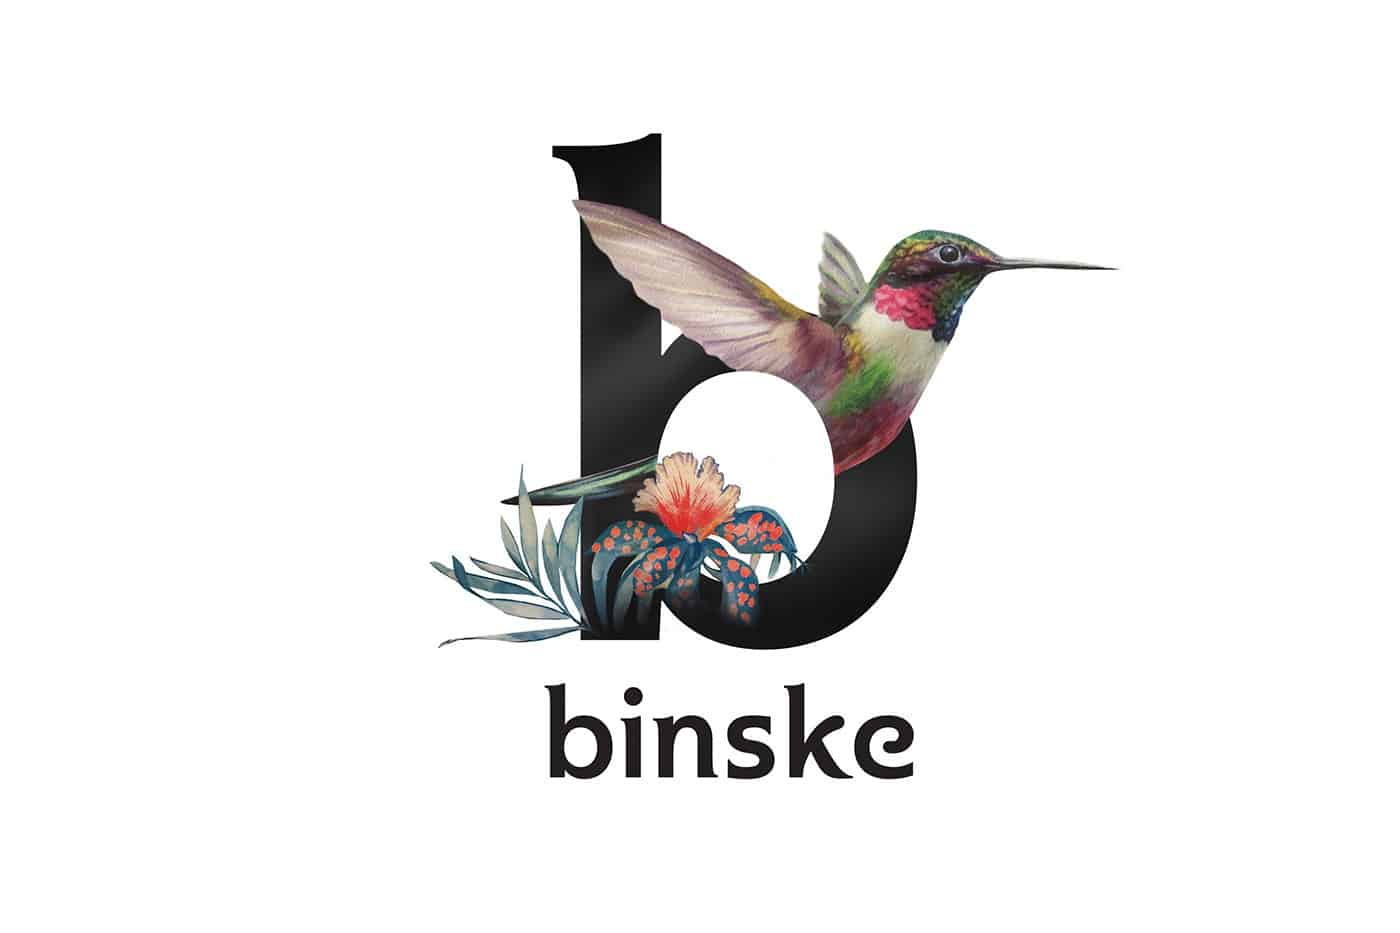 Binske In Santa Barbara